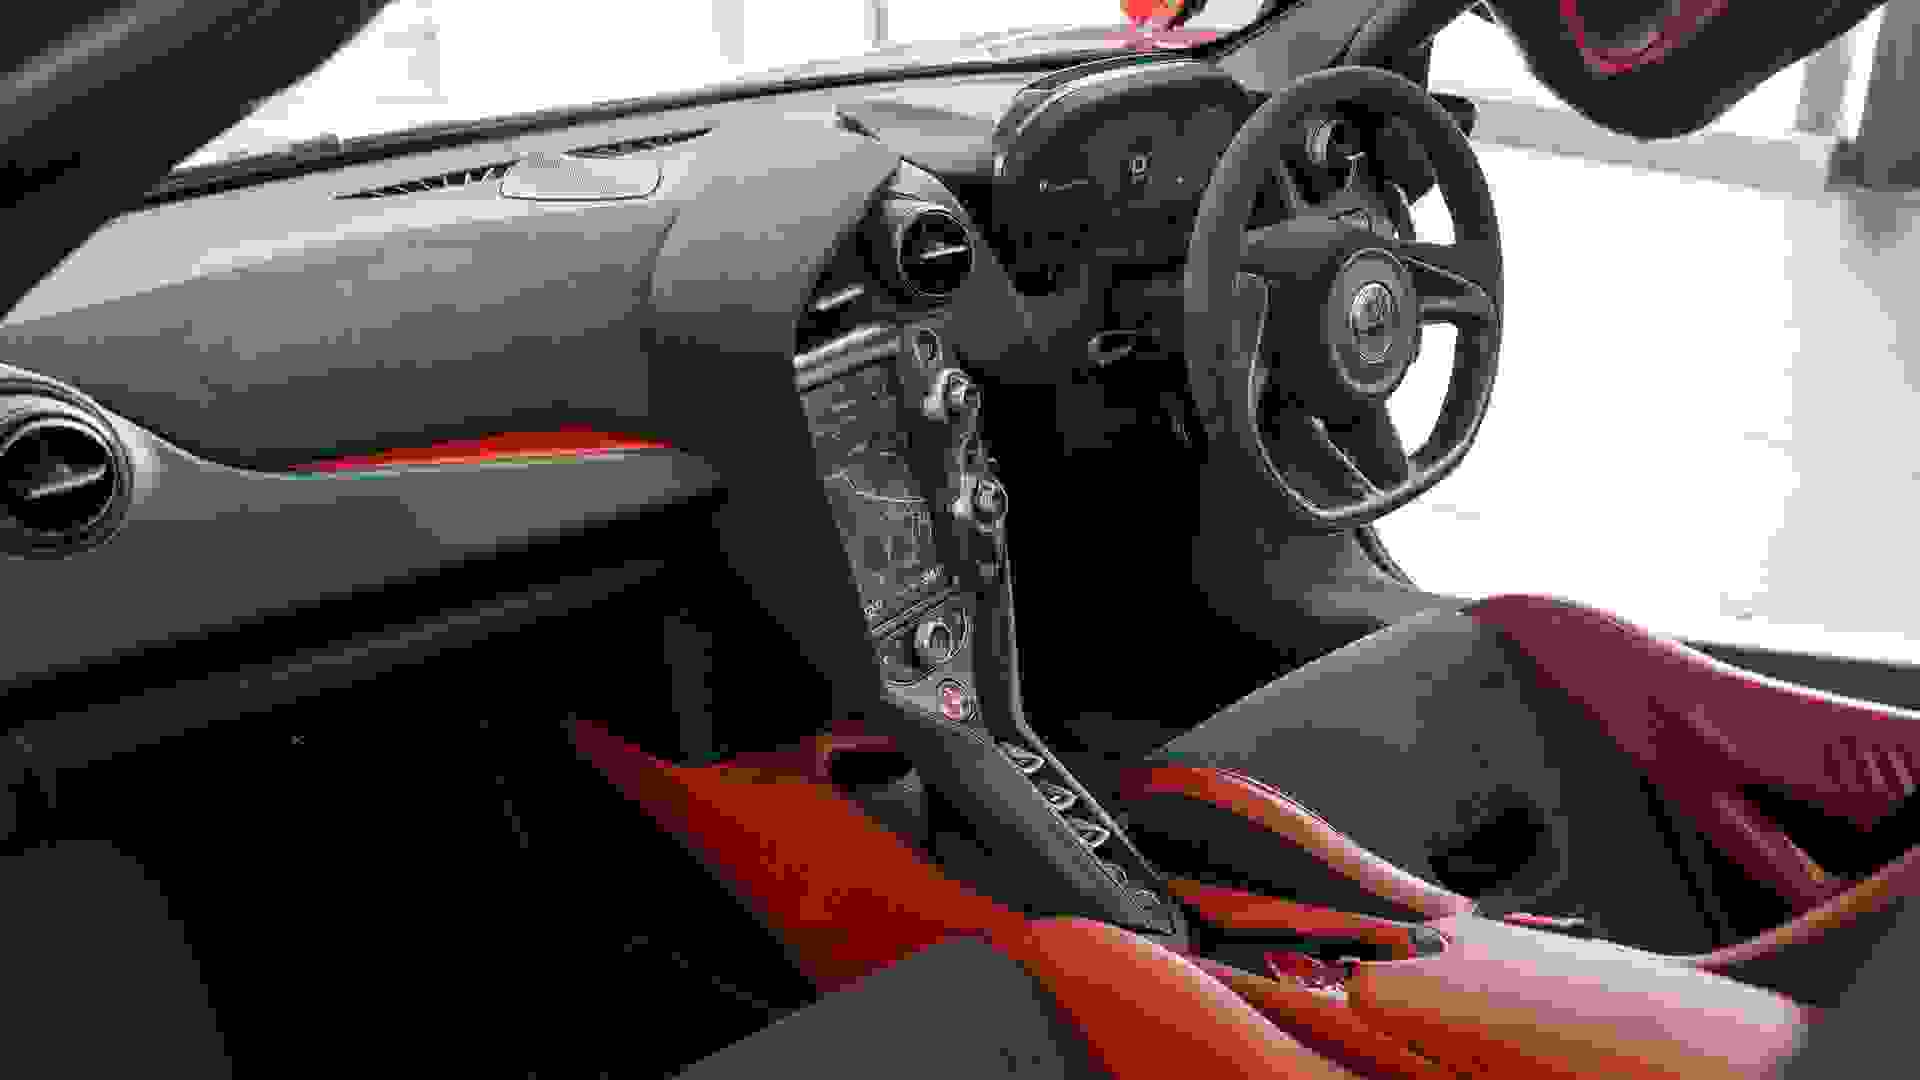 McLaren 720S Photo 6486c9e7-746f-4c07-a059-49a50870e530.jpg